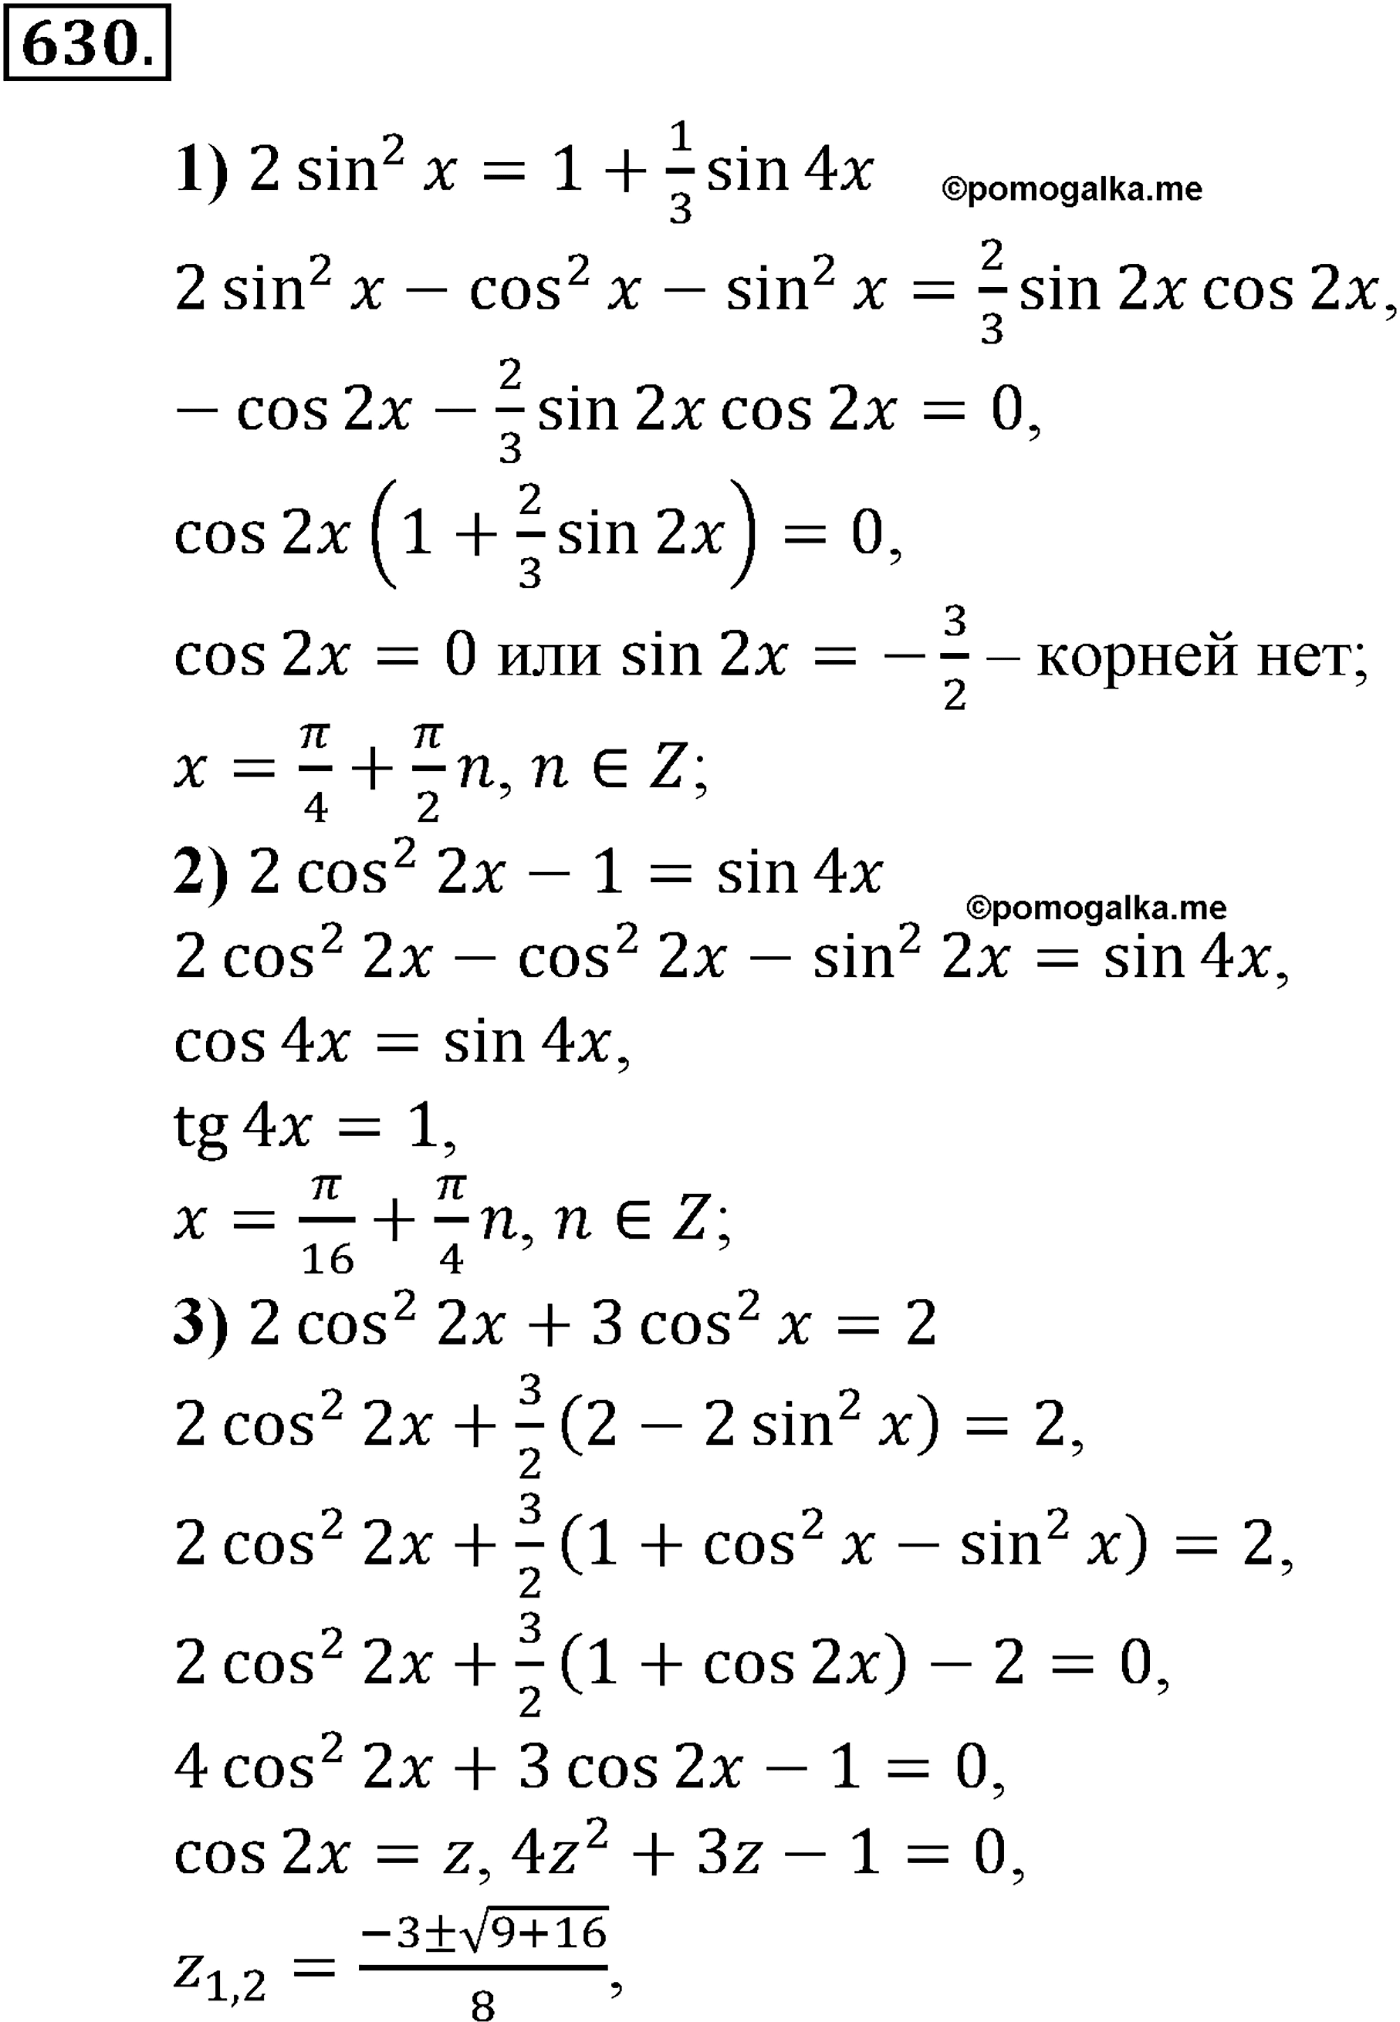 разбор задачи №630 по алгебре за 10-11 класс из учебника Алимова, Колягина